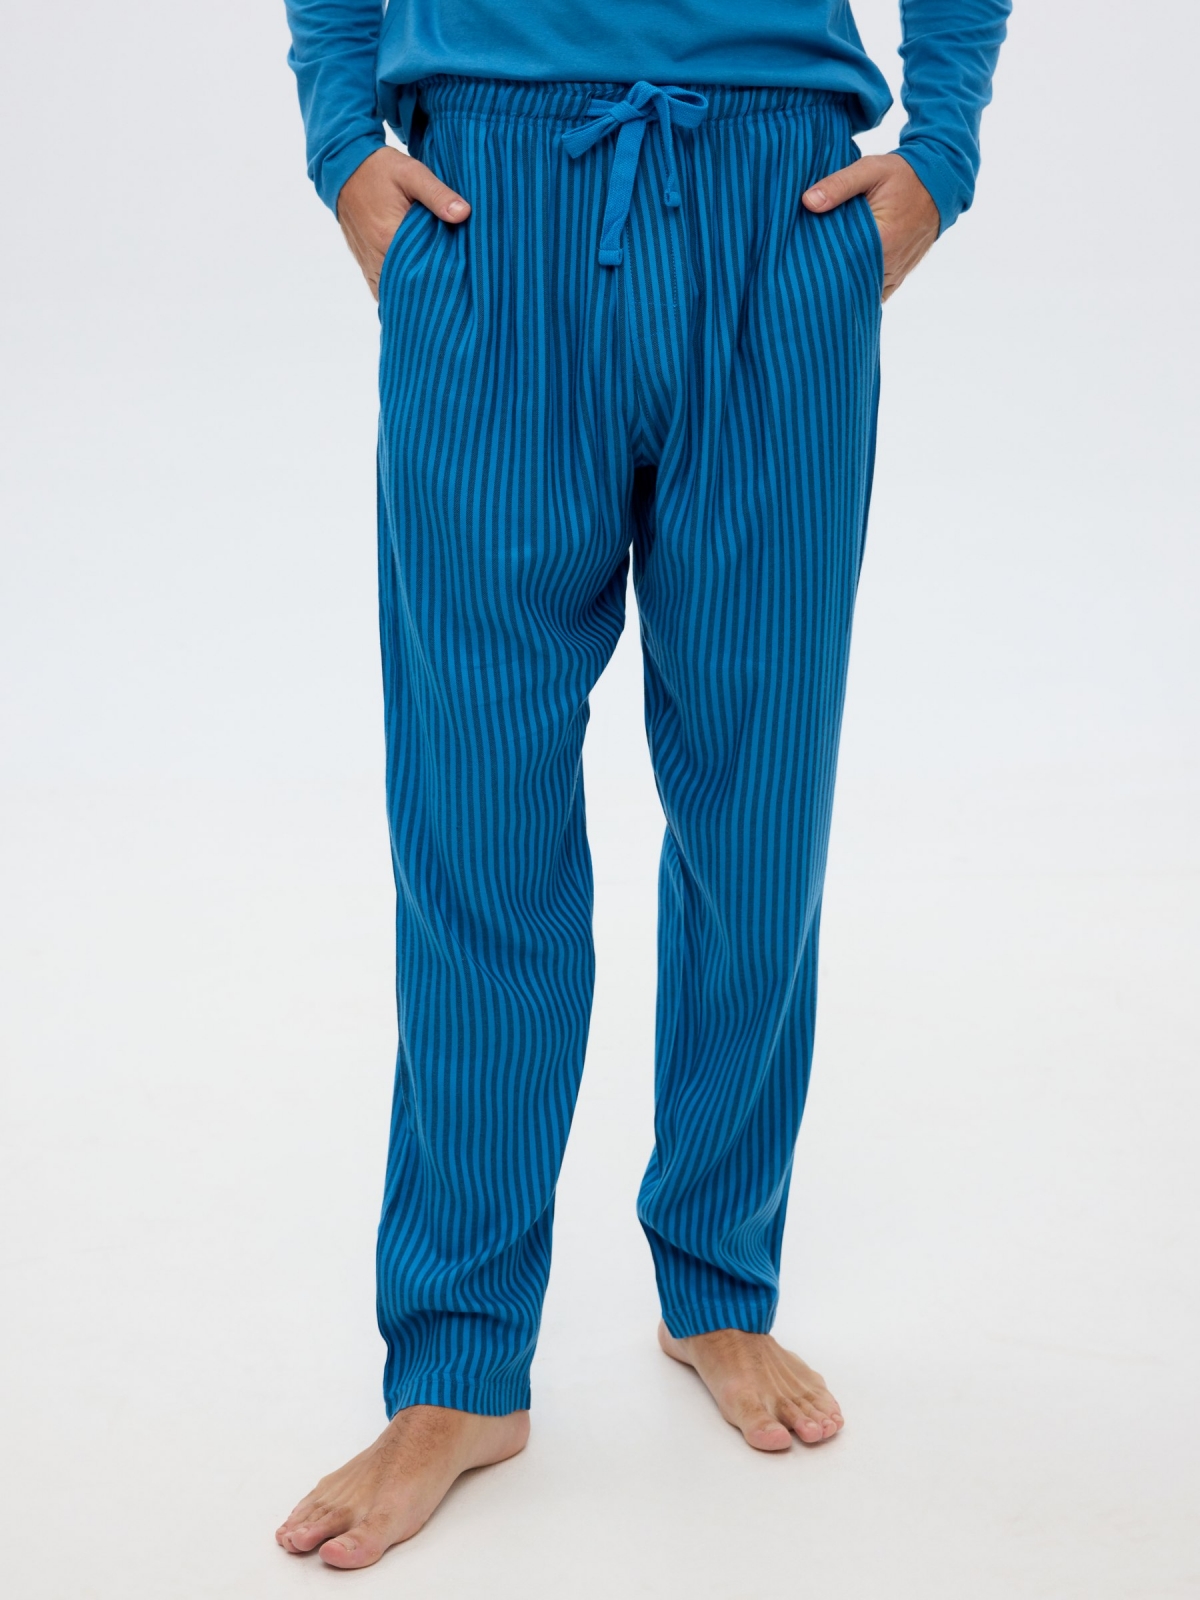 Blue pajamas striped pants blue detail view